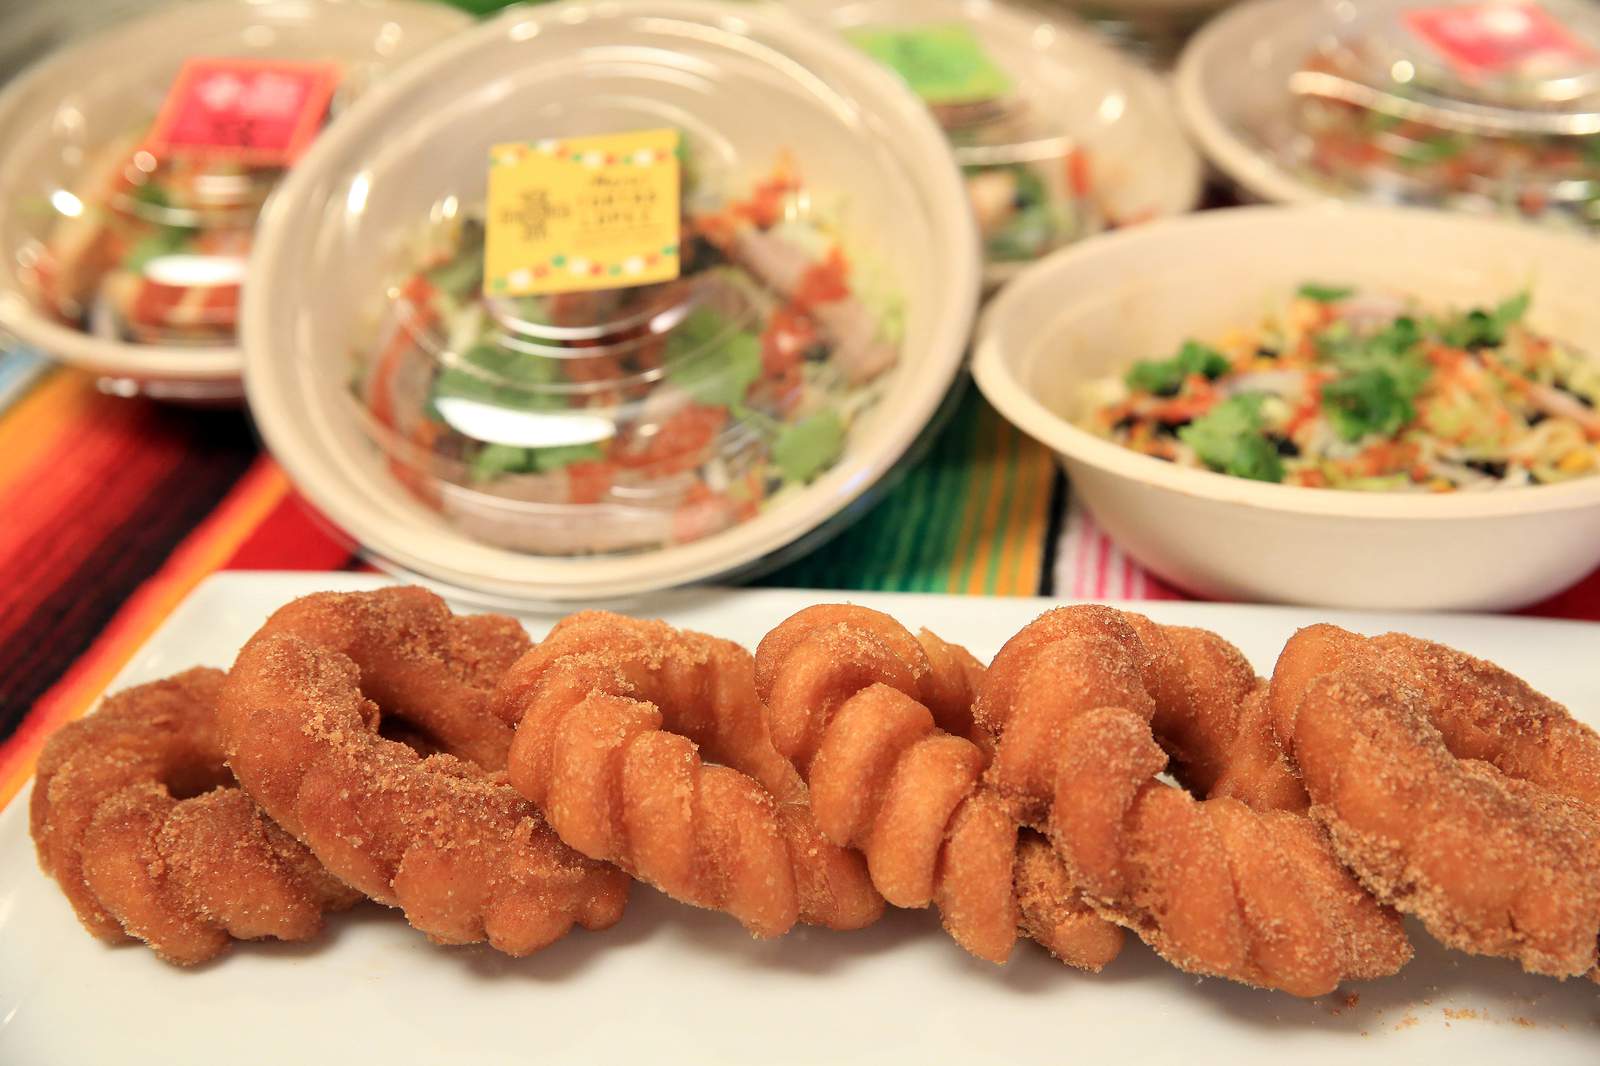 Mario's Tortas Lopez's cinnamon sugar-dusted churro doughnuts served with dulce de leche.